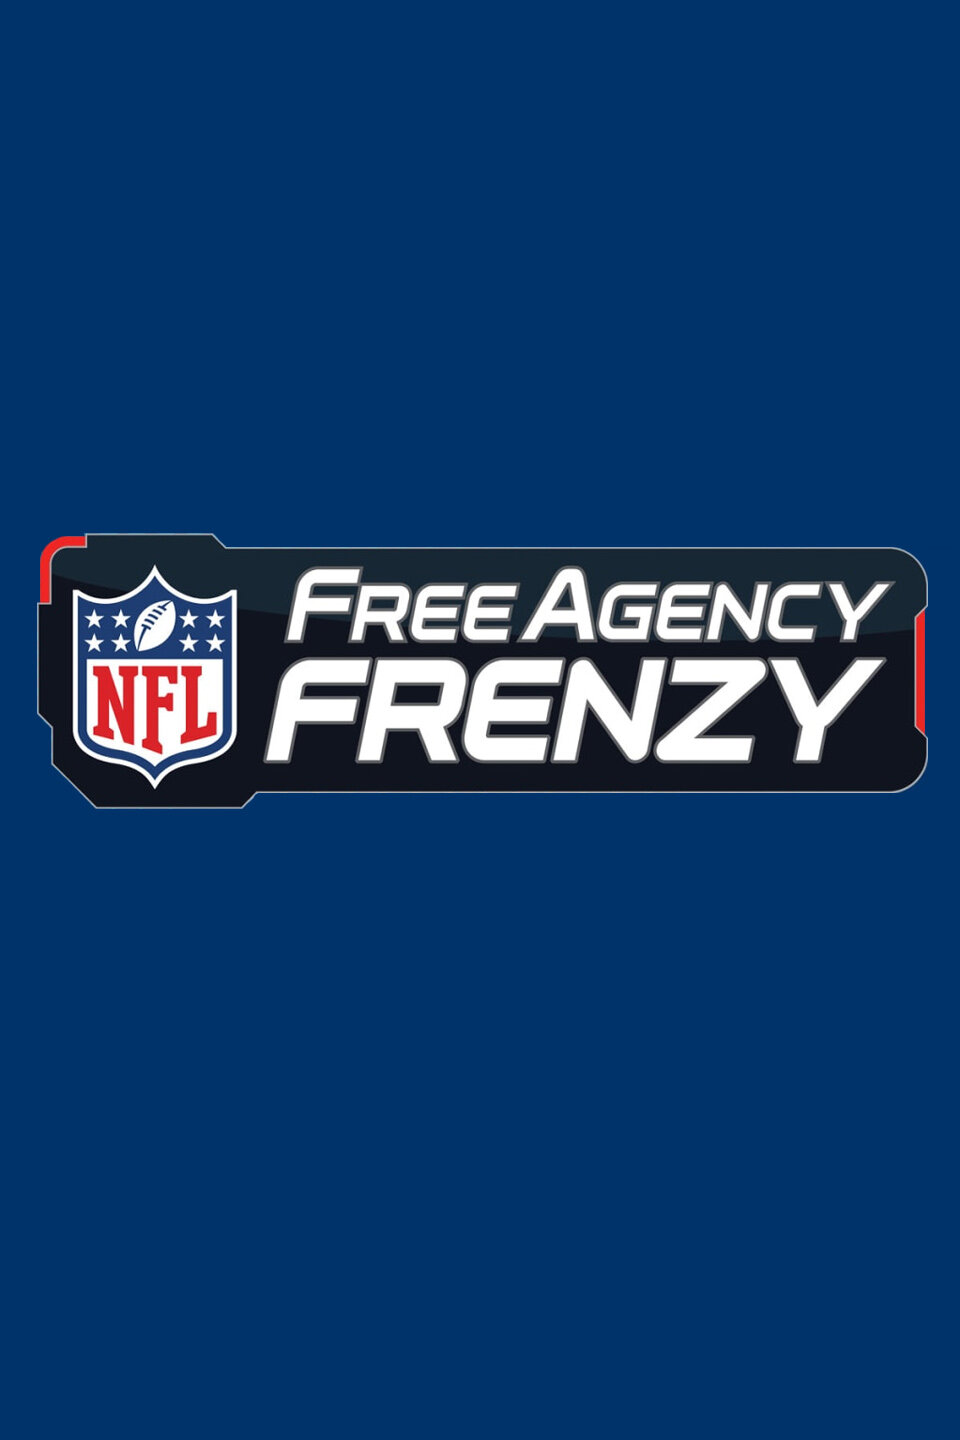 NFL Free Agency Frenzy ne zaman